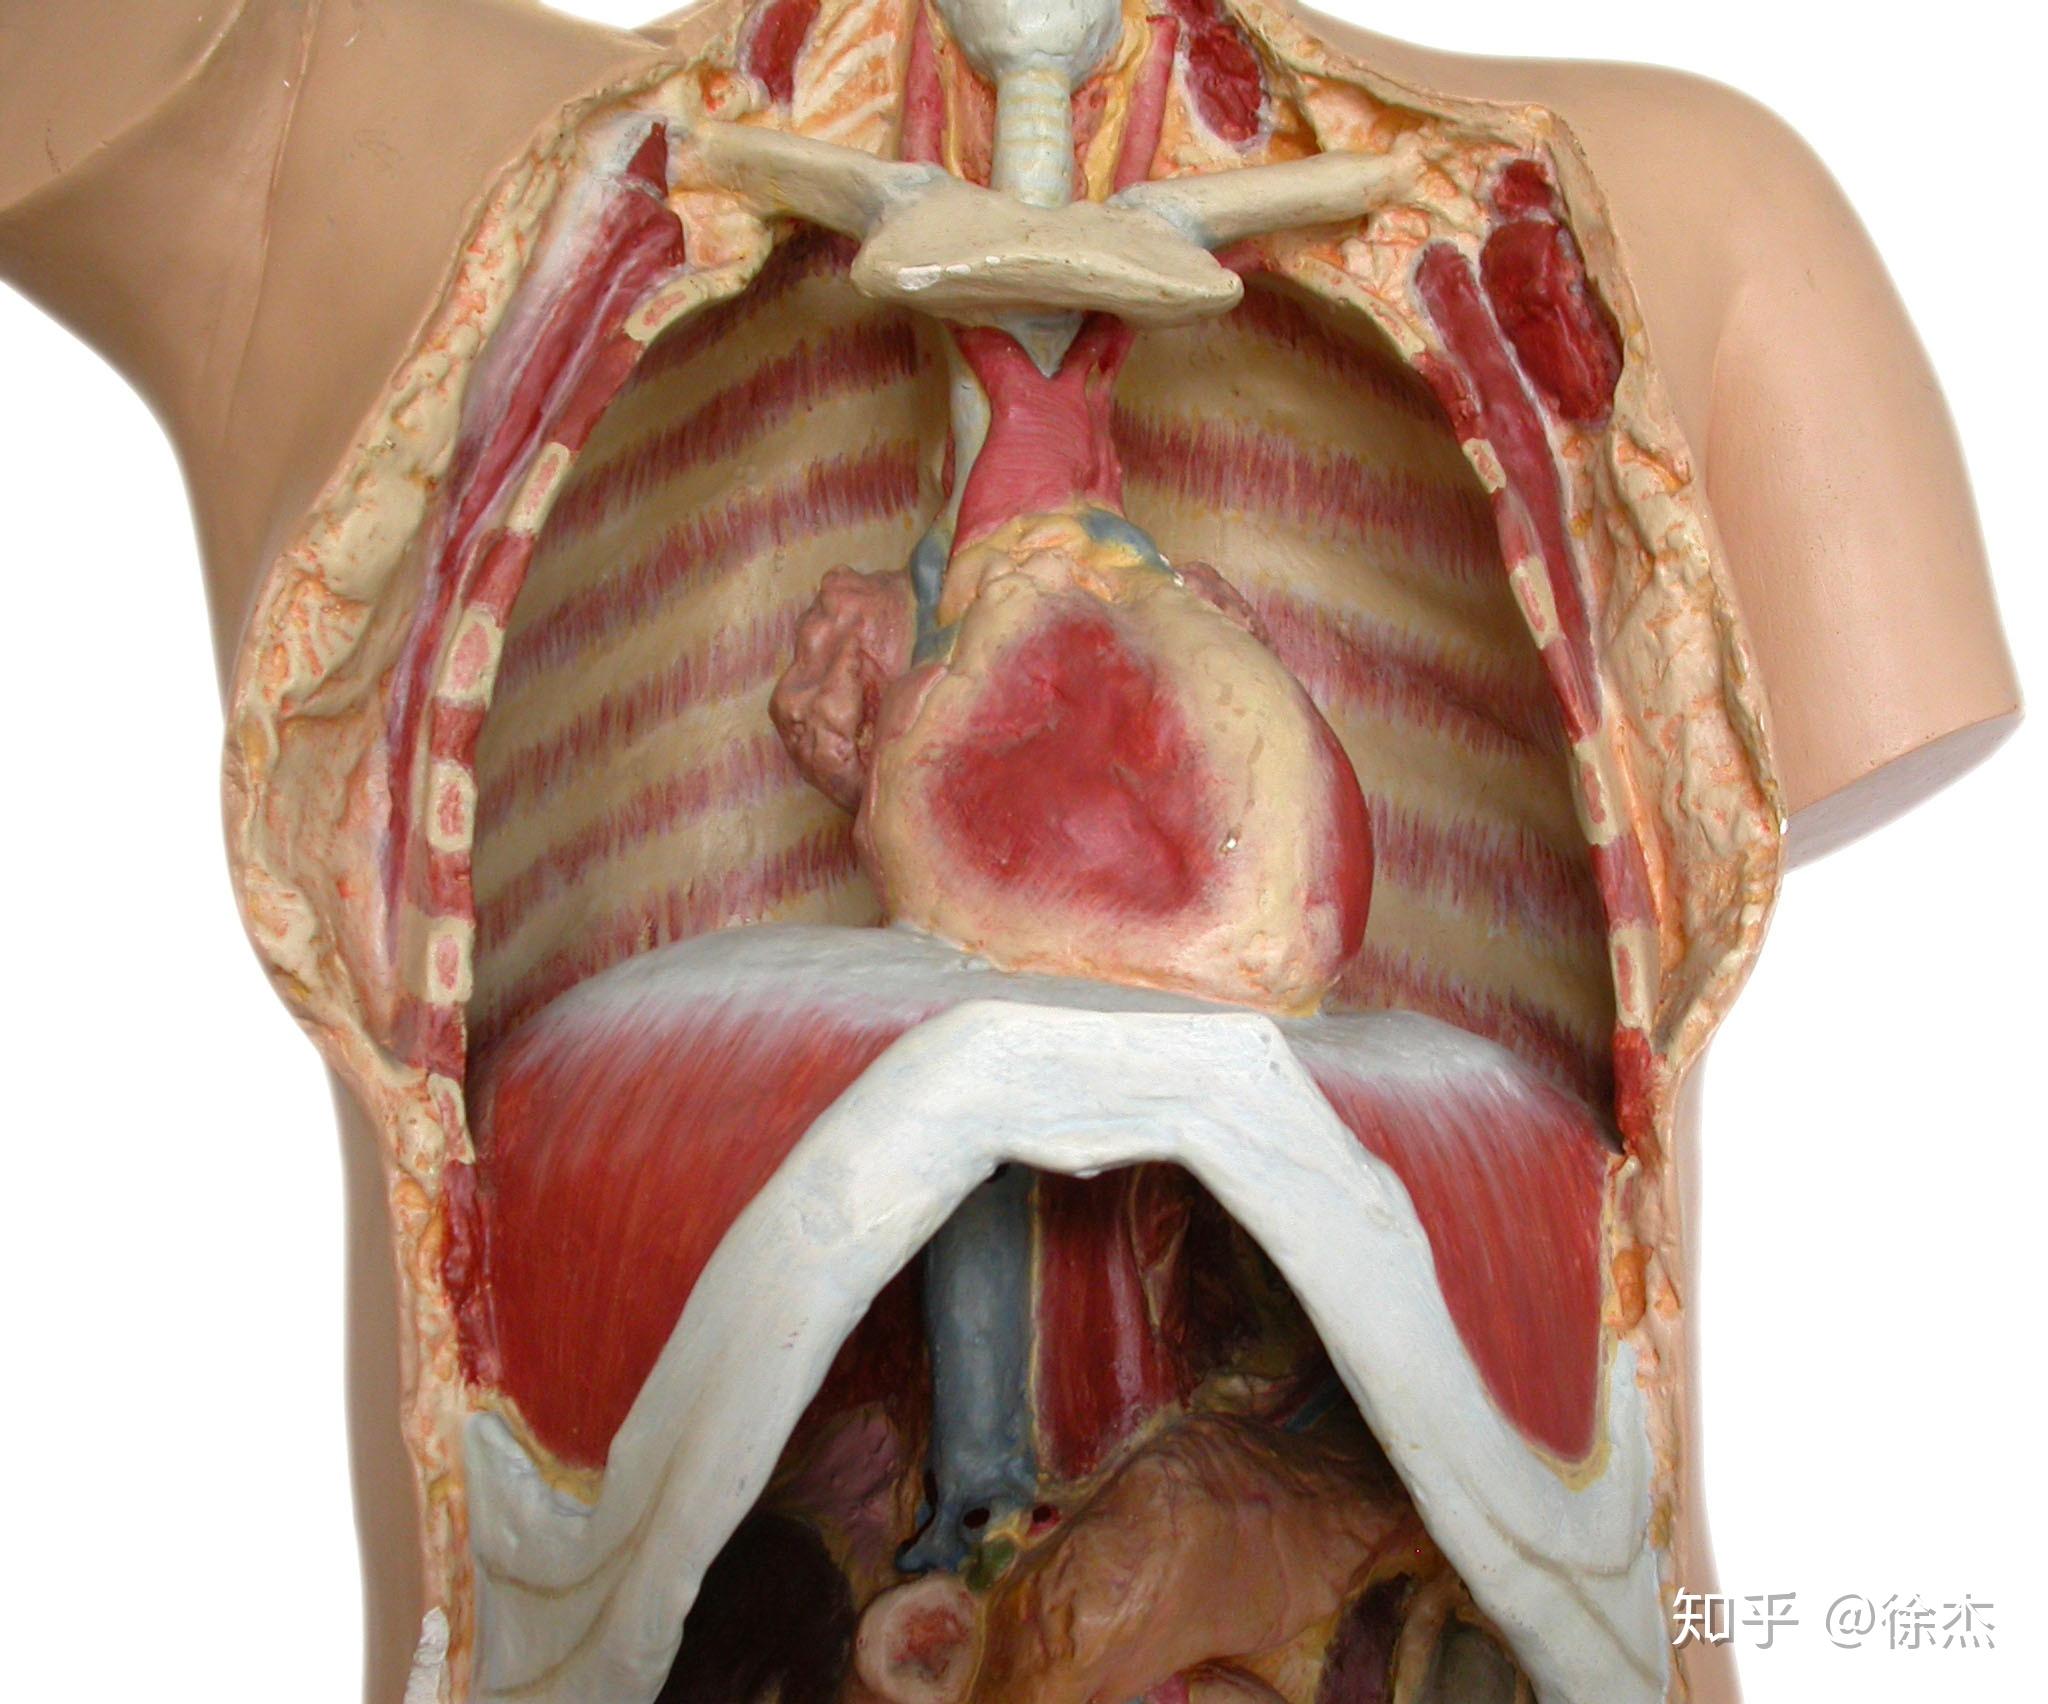 当横膈膜呼吸中膈肌收缩下降到腹腔,腹内压增加会造成腹部膨胀,但前侧